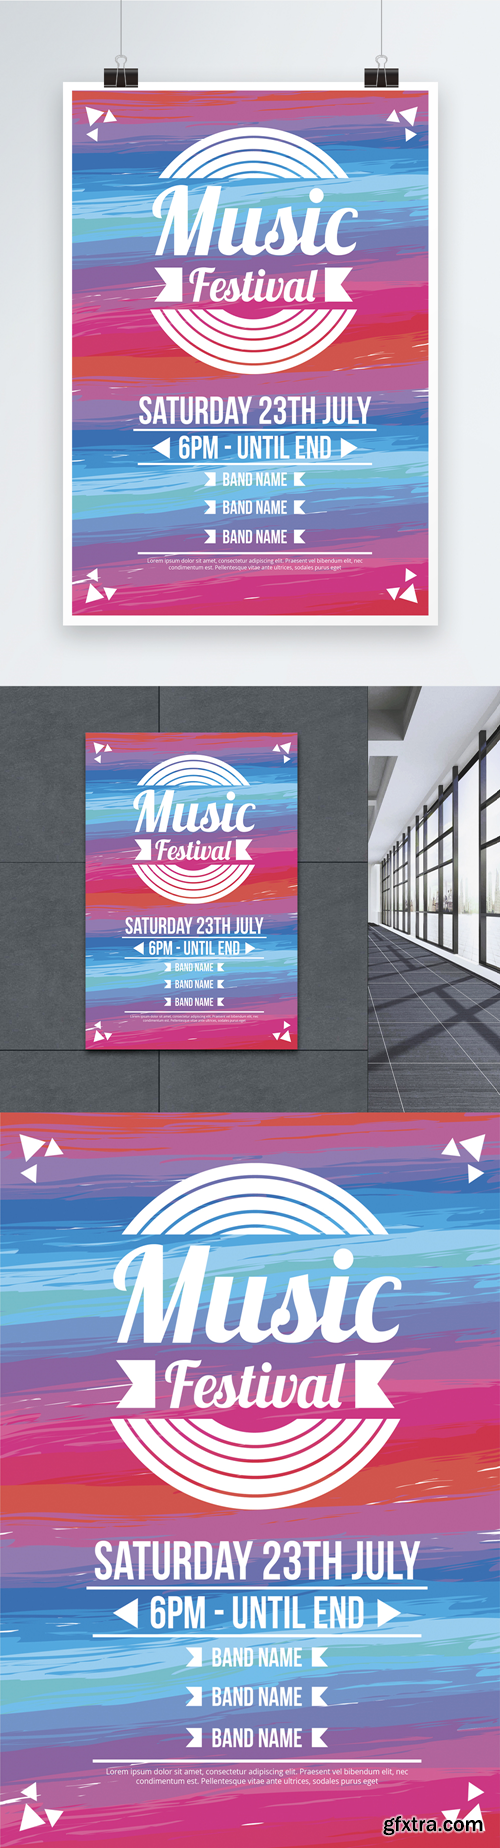 fashion dazzle music festival posters